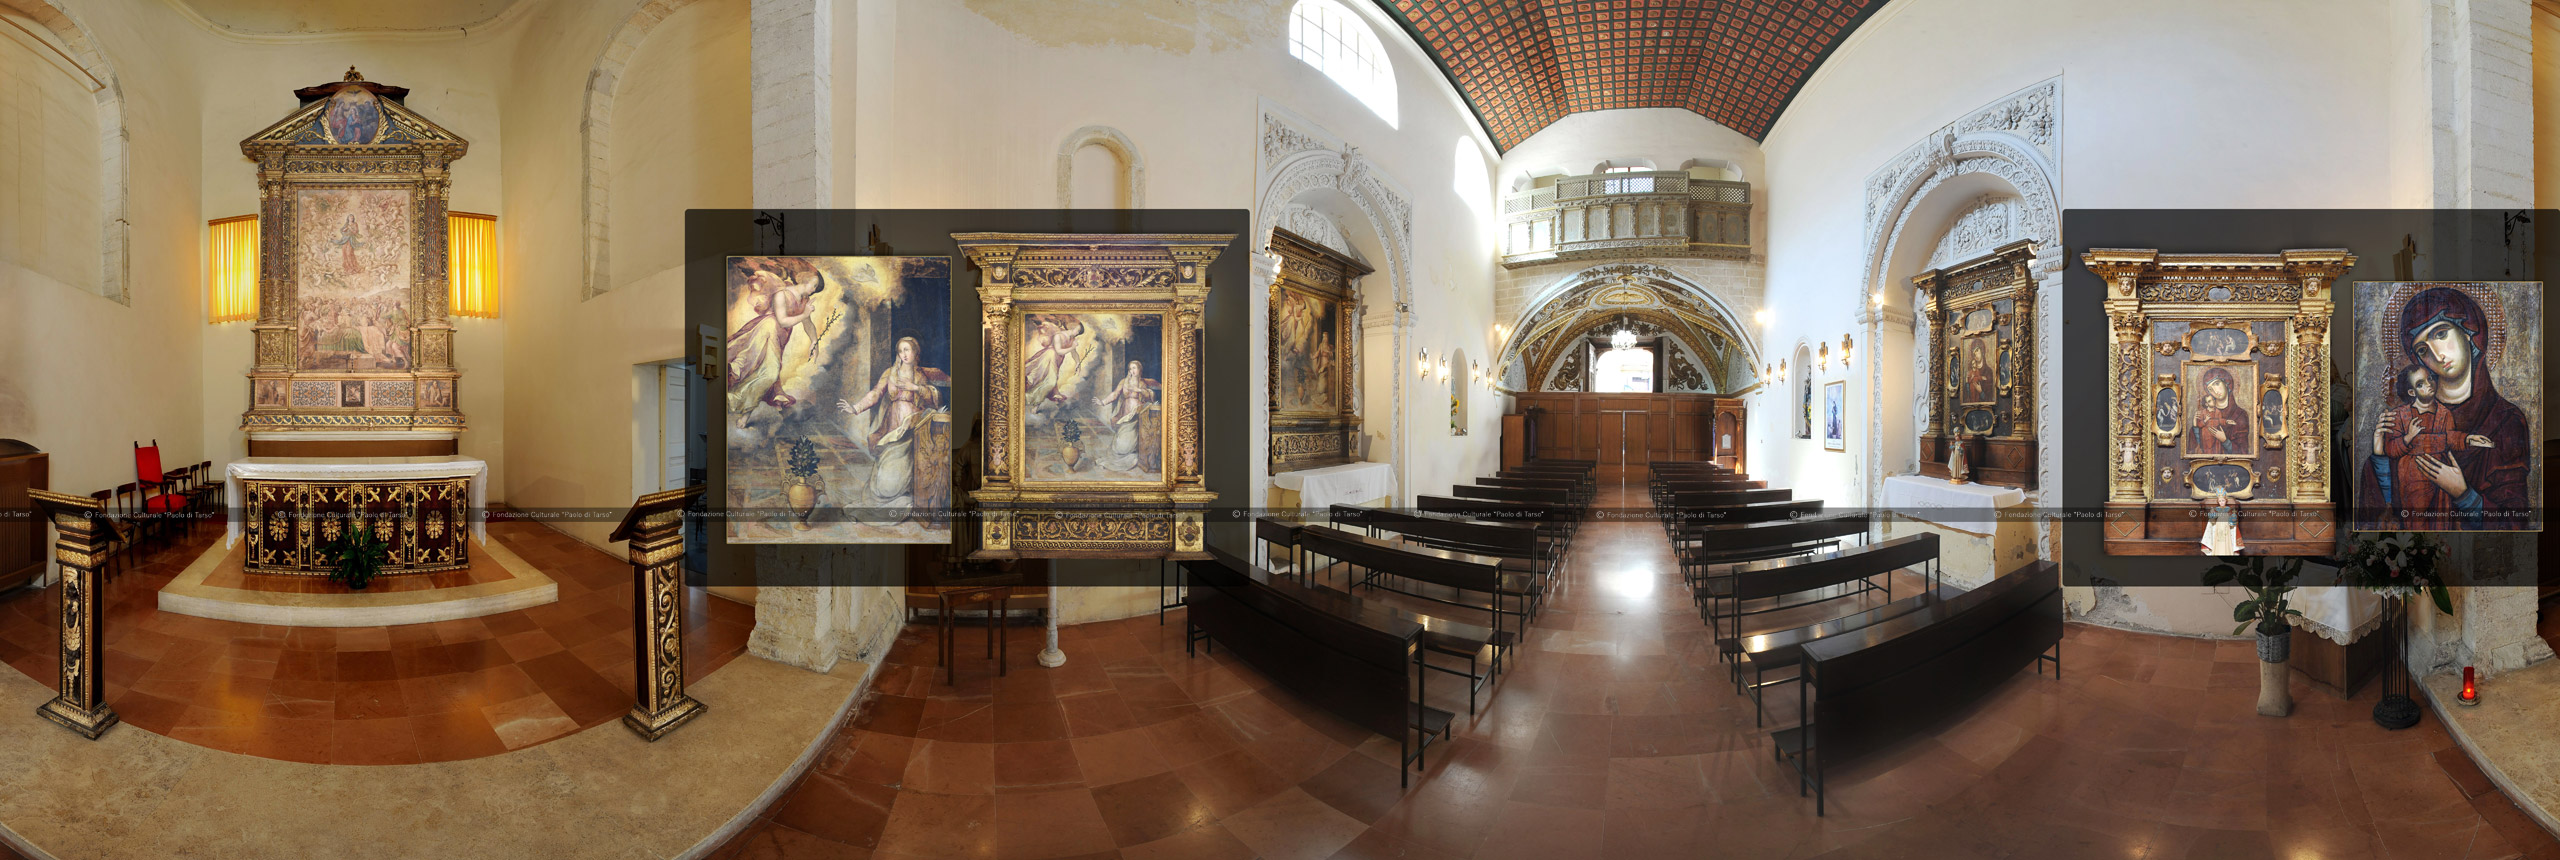 Metaverso Cosenza - Musei Digitali Chiesa Santa Maria delle Vergini